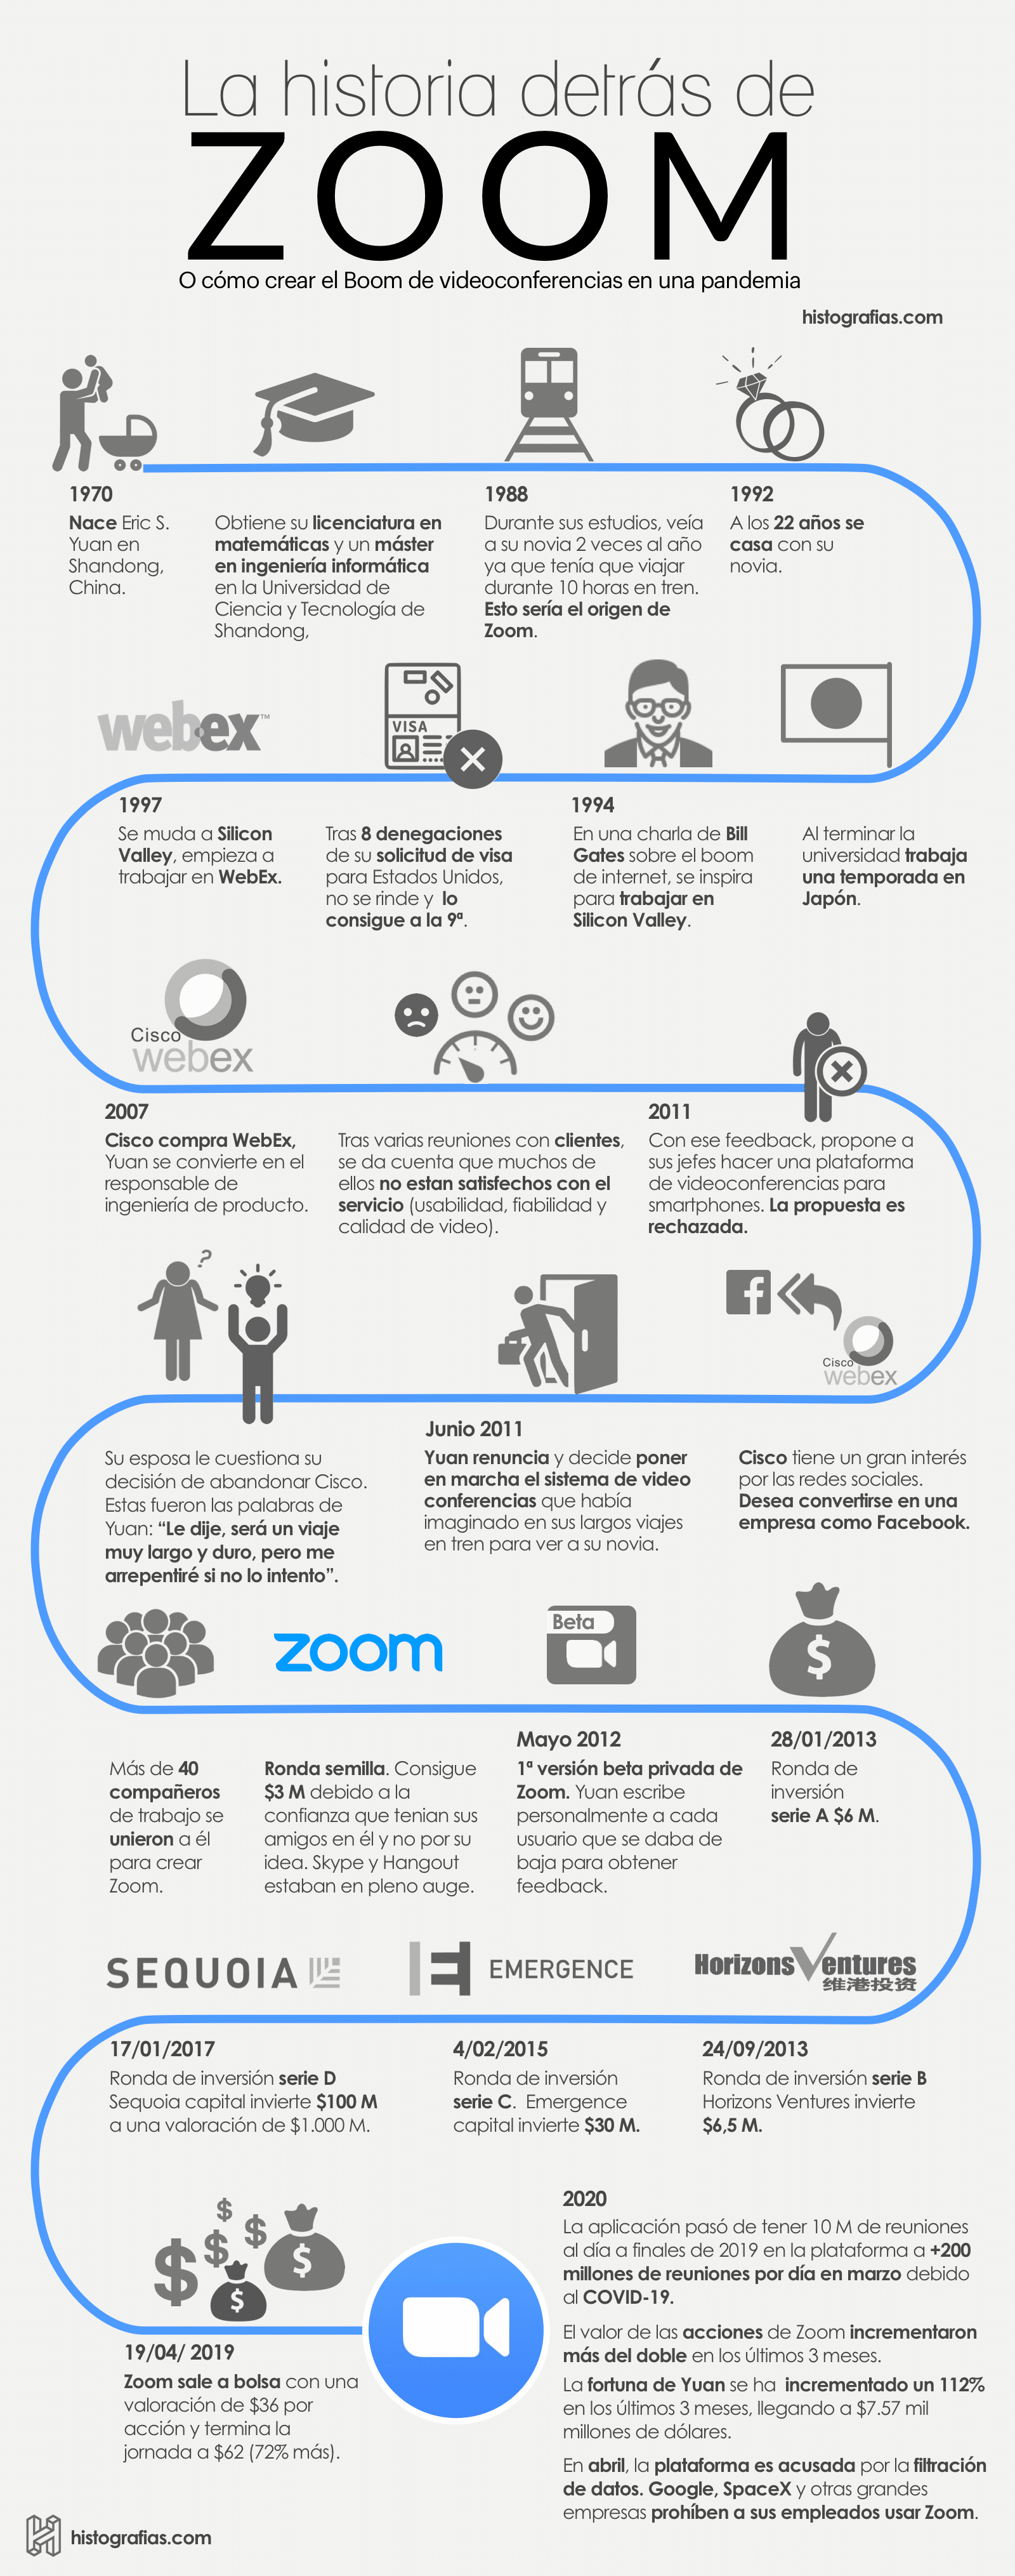 Conoce a través de esta infografía la historia detrás de Zoom y su fundador Eric S. Yuan.